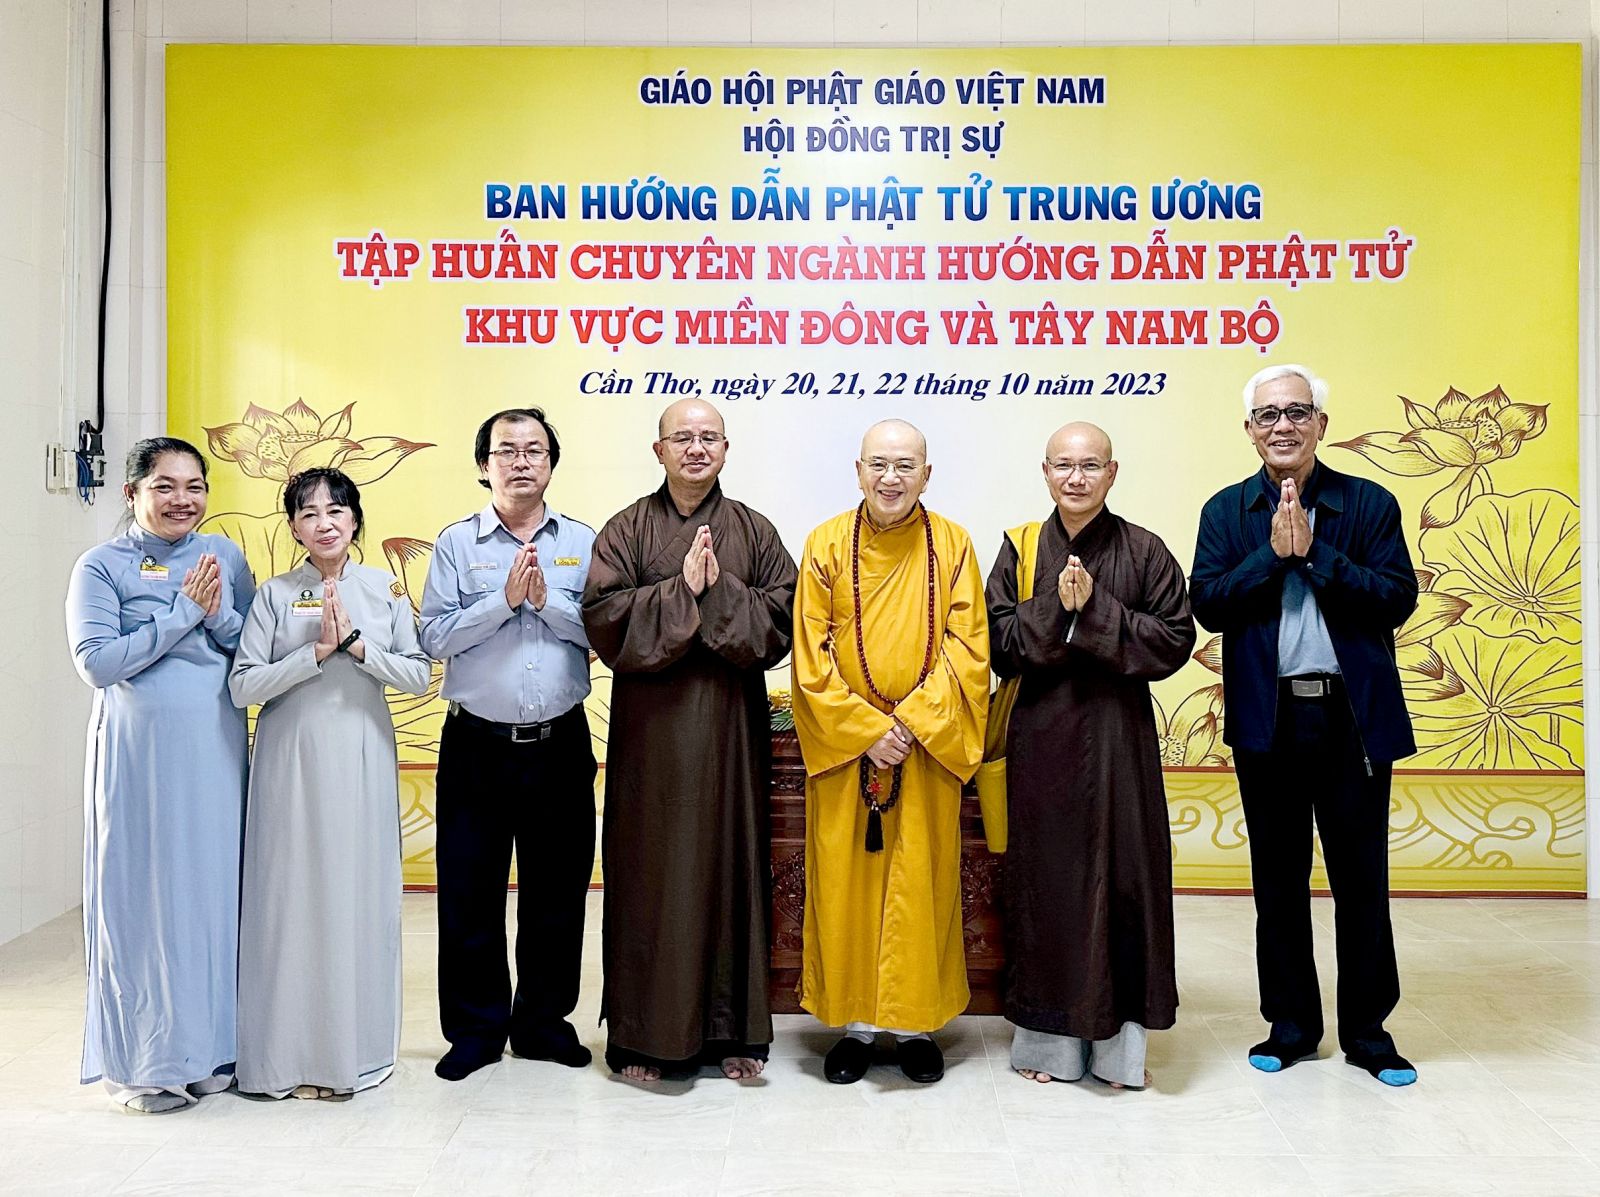 Cần Thơ: Phân ban GĐPT Đồng Nai tham dự Khóa Bồi dưỡng Chuyên ngành Hướng dẫn Phật tử năm 2023